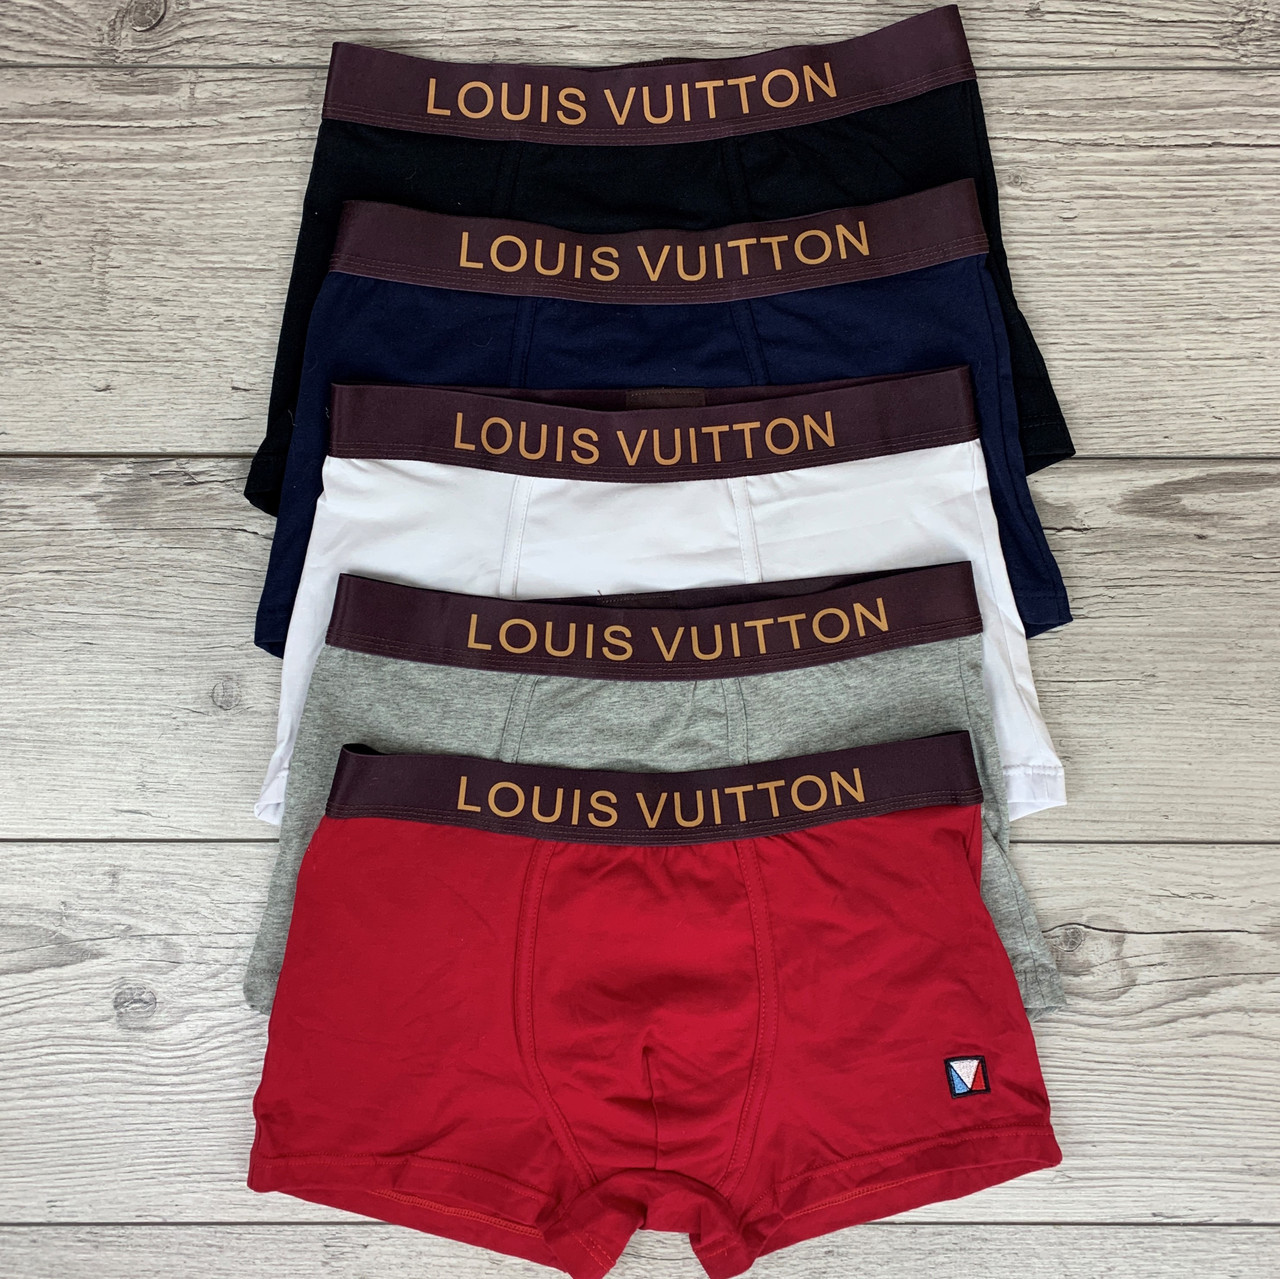 

Набор мужских трусов Louis Vuitton Луи Виттон из 5 штук Набор разноцветных трусов Хлопковые трусы боксеры XL, Разные цвета